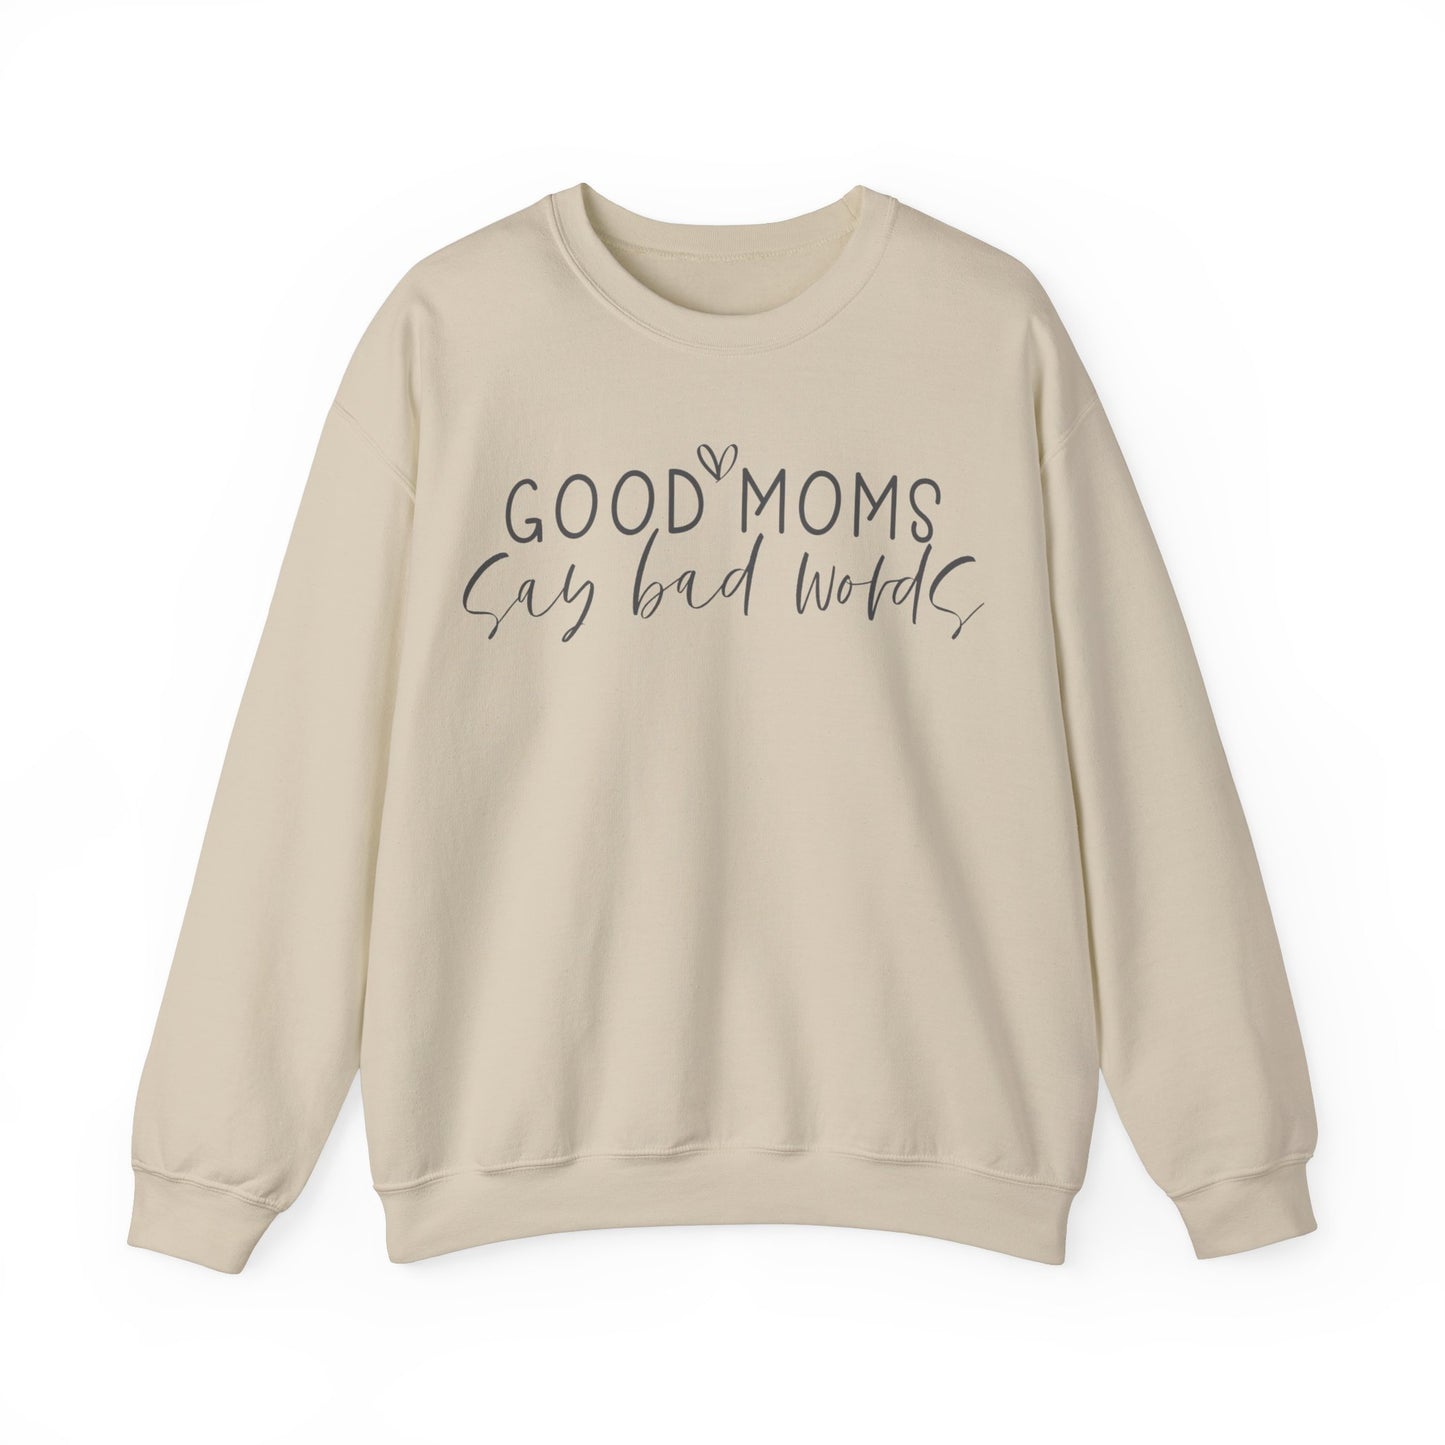 Good Moms Say Bad Words - Crewneck Sweatshirt